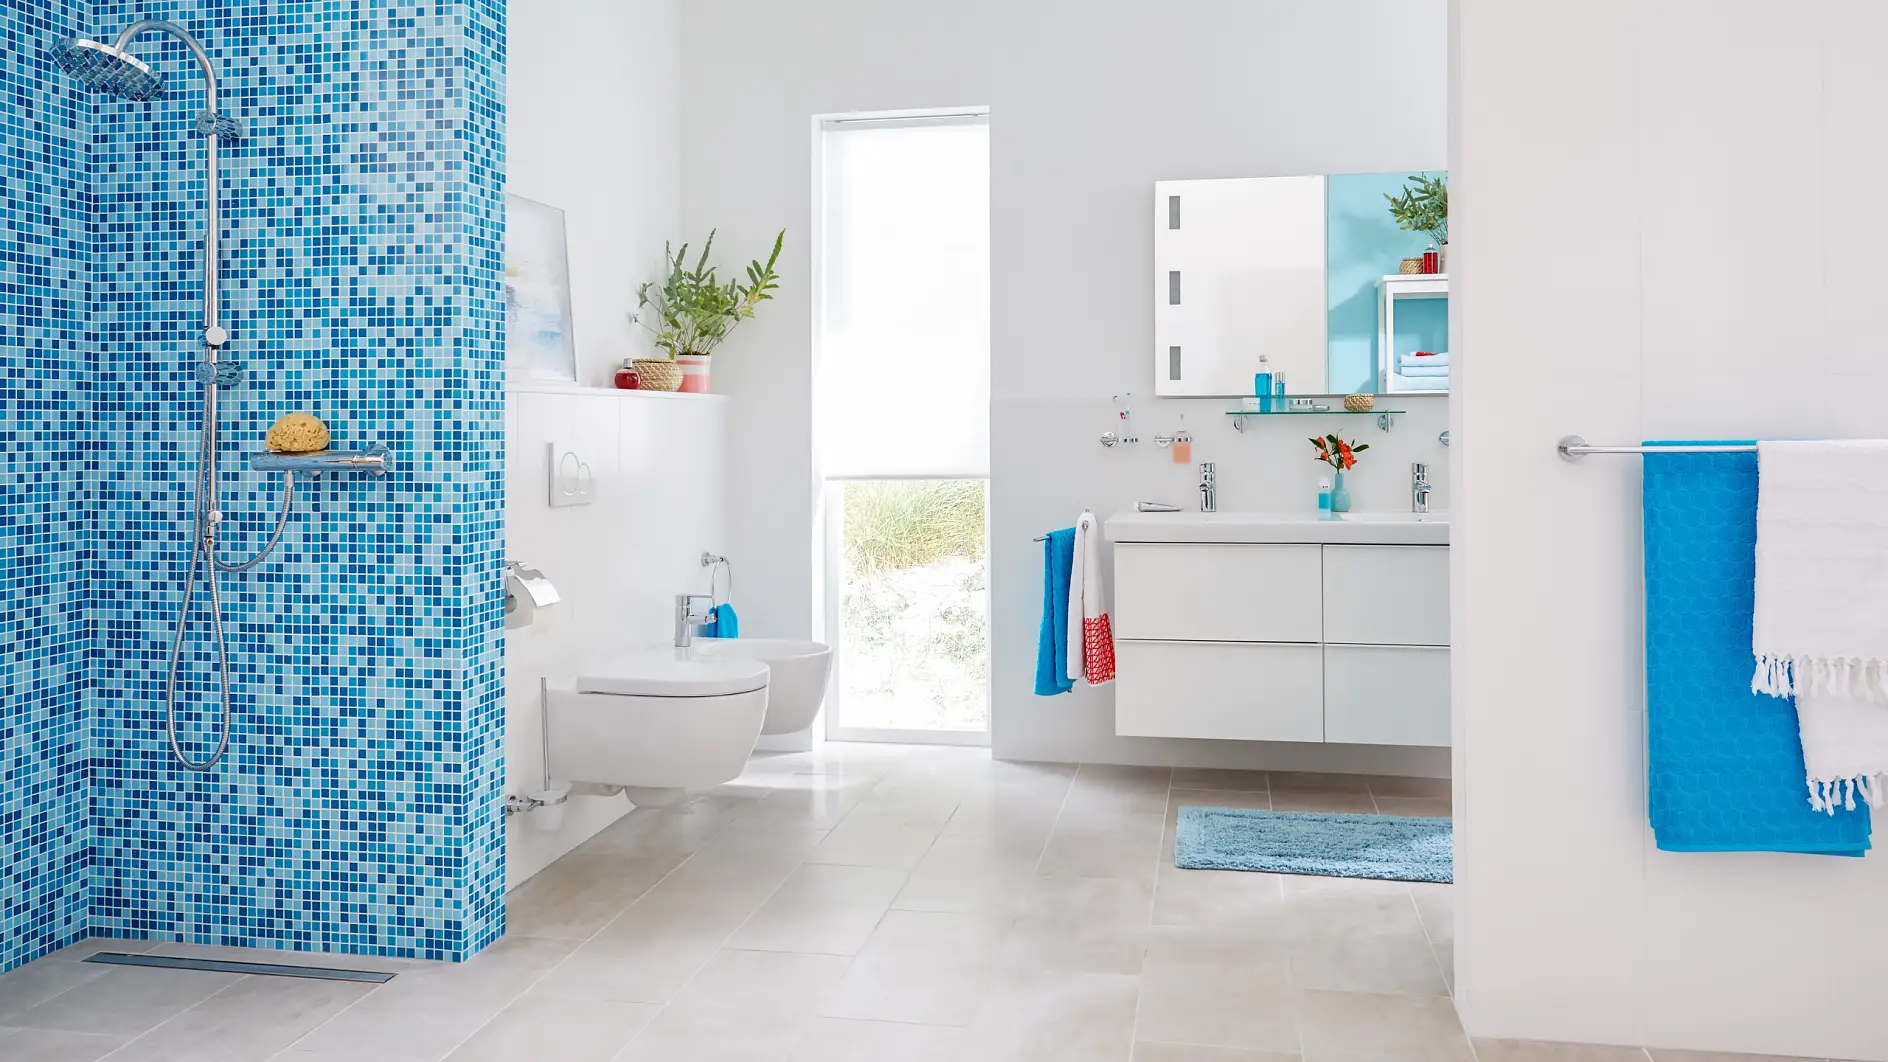 Verleihen Sie Ihrem Bad einen Touch von Einfachheit mit praktischem Design.